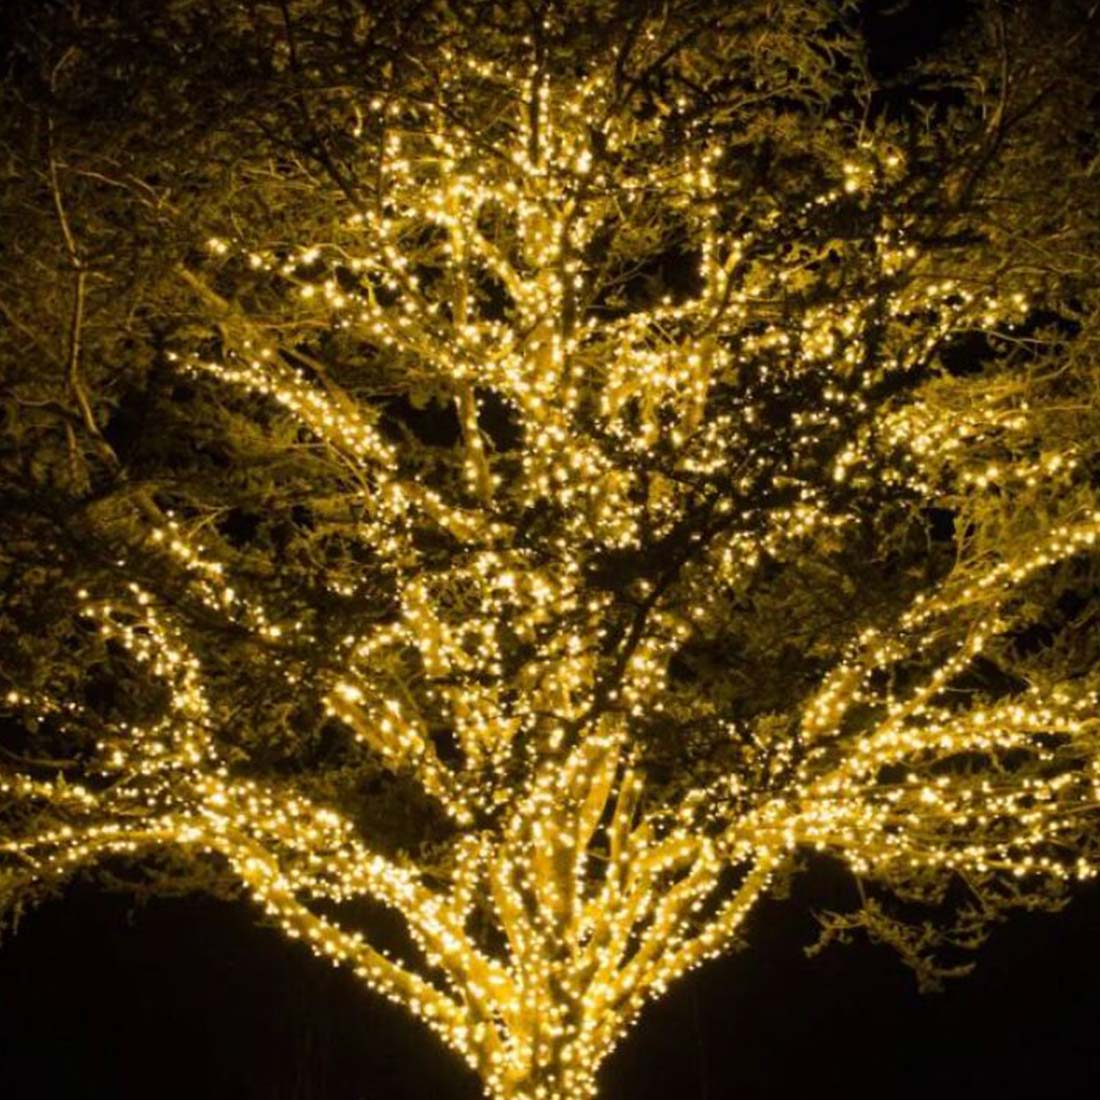 Idéias para iluminação de árvores o ano todo